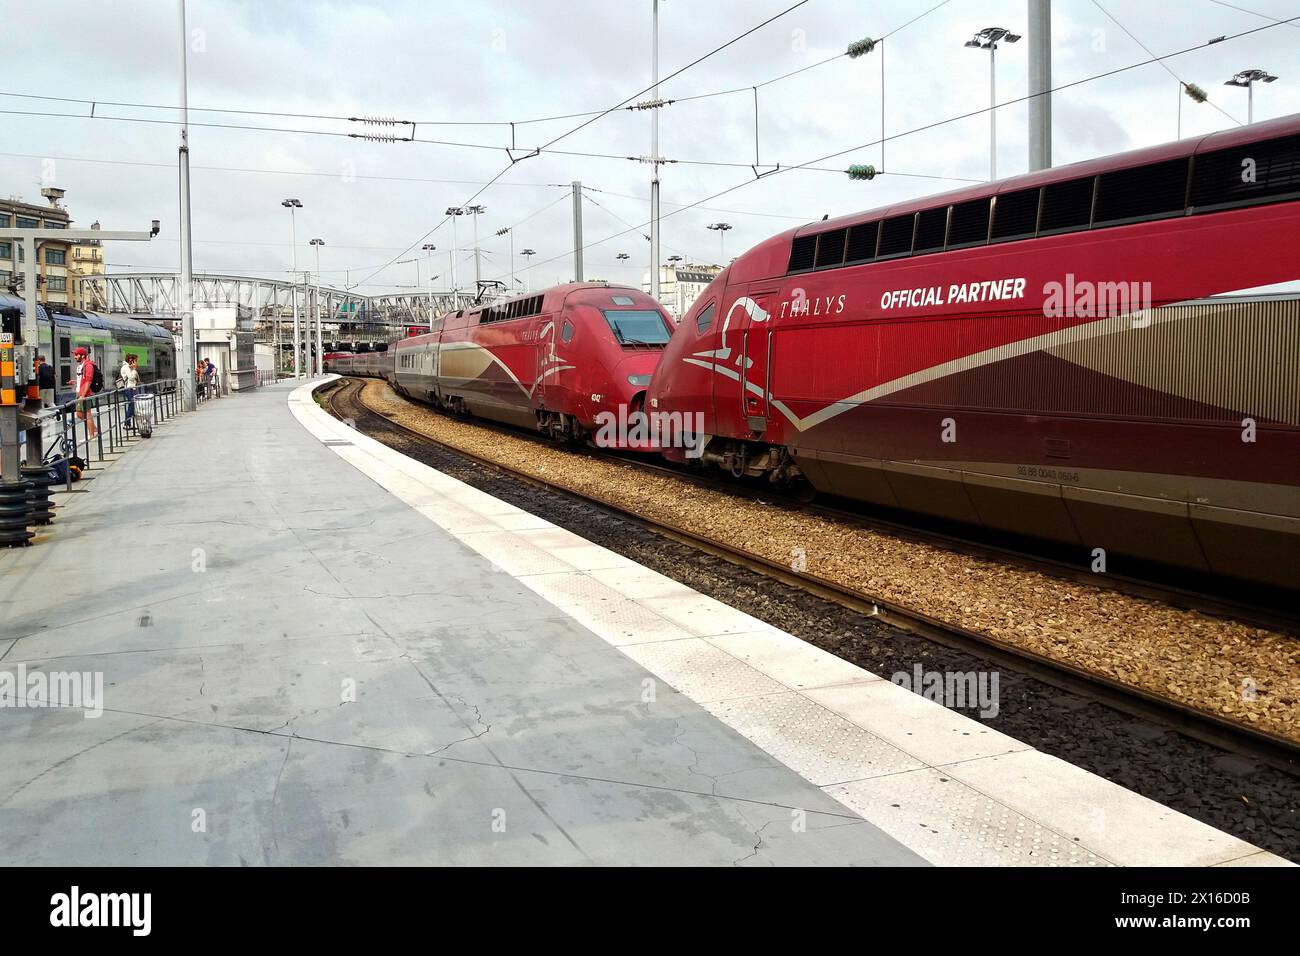 París, Francia - 25 de agosto de 2017: Thalys (tren internacional de alta velocidad) listo para la salida en Gare du Nord. Foto de stock